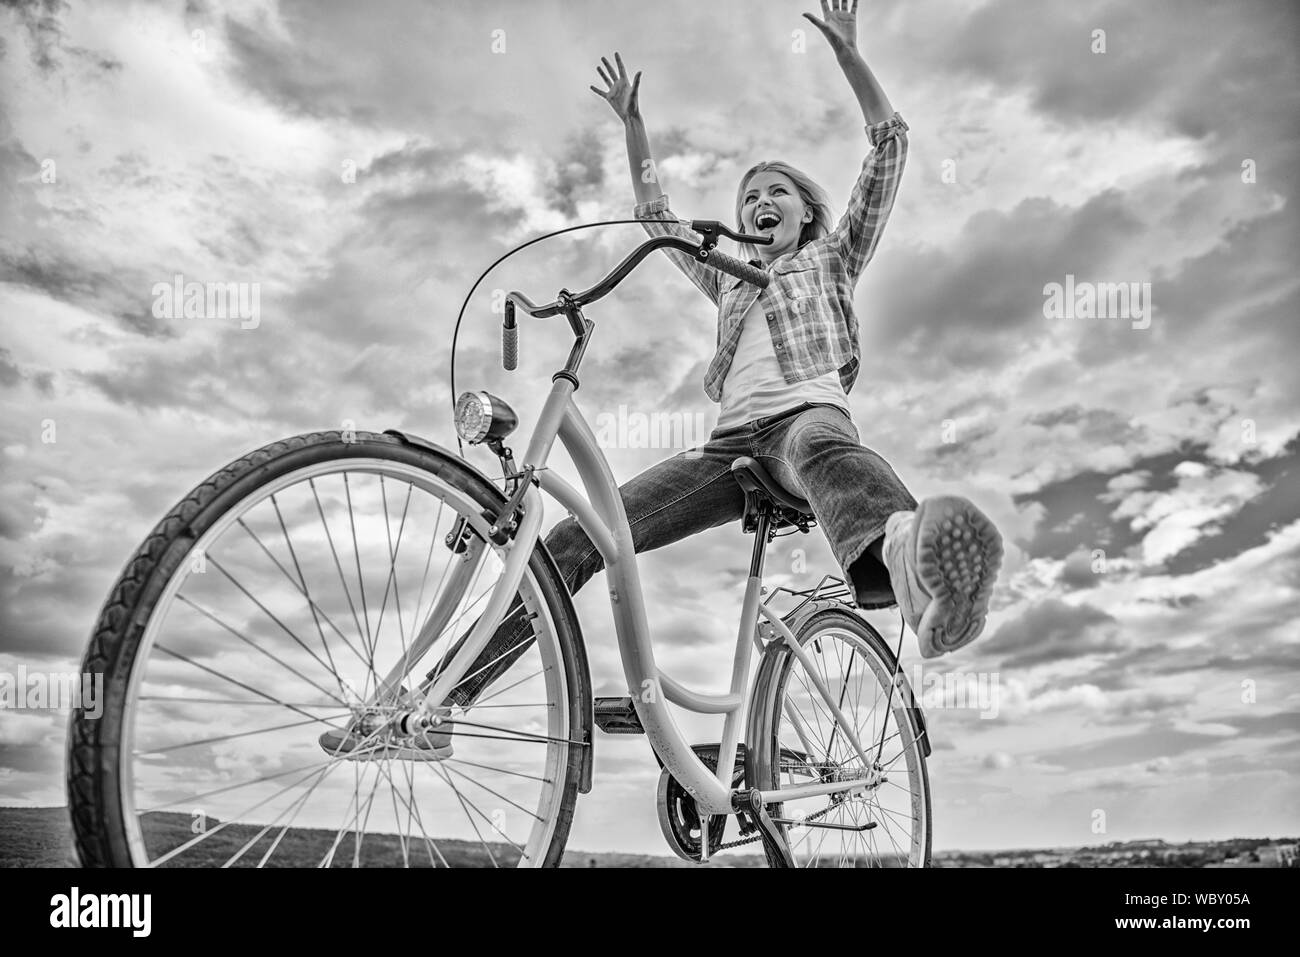 La libertà e la gioia. La donna si sente libero mentre vi piace andare in bicicletta. Più soddisfacente in forma di auto trasporto. Escursioni in bicicletta dà la sensazione di libertà e indipendenza. La ragazza corse in bicicletta sullo sfondo del cielo. Foto Stock